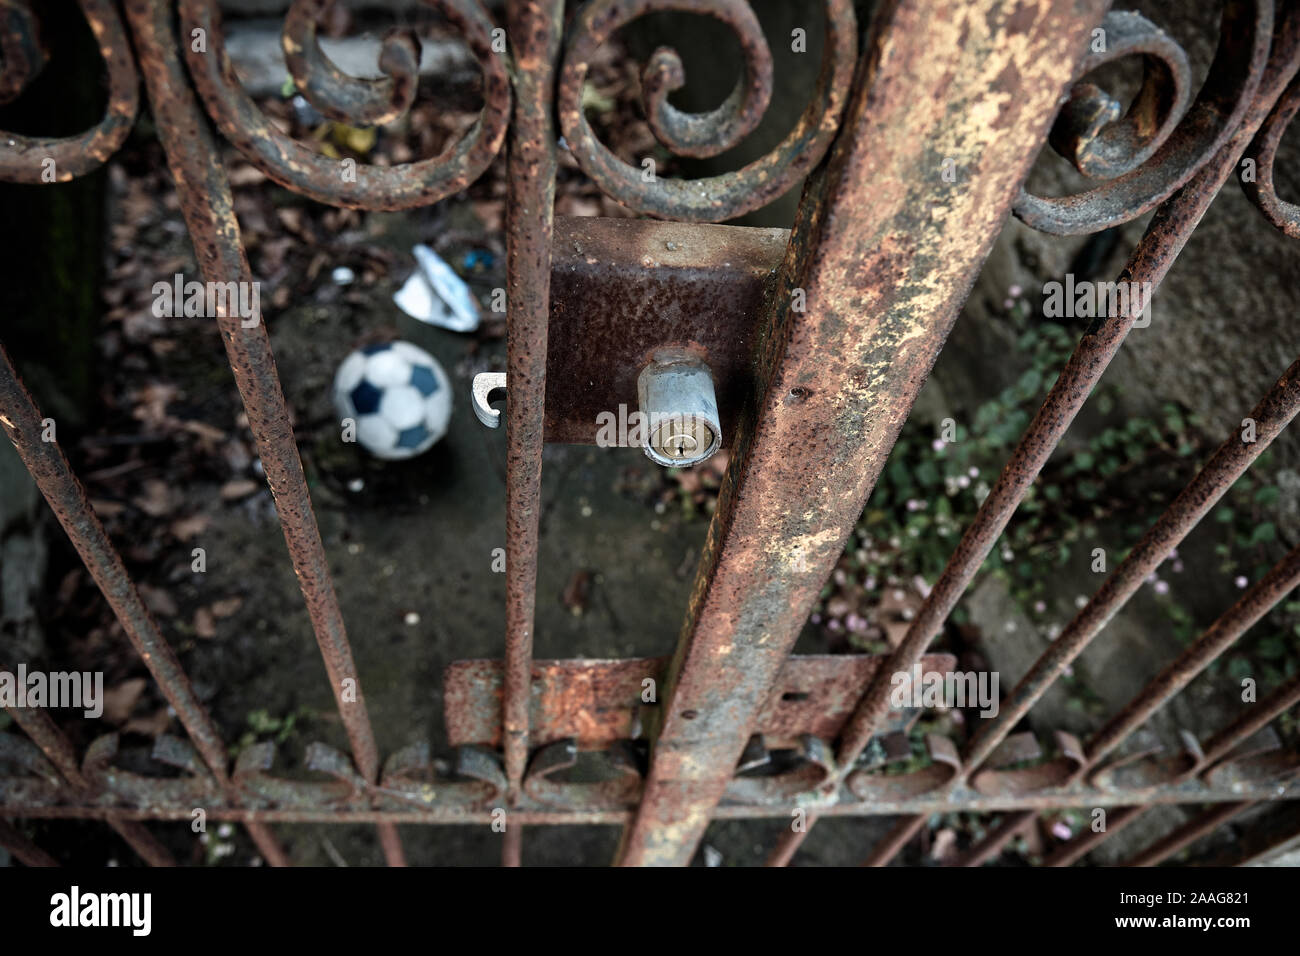 El balón de fútbol está cercada, detrás de las rejas de un portón de hierro oxidado. Foto de stock